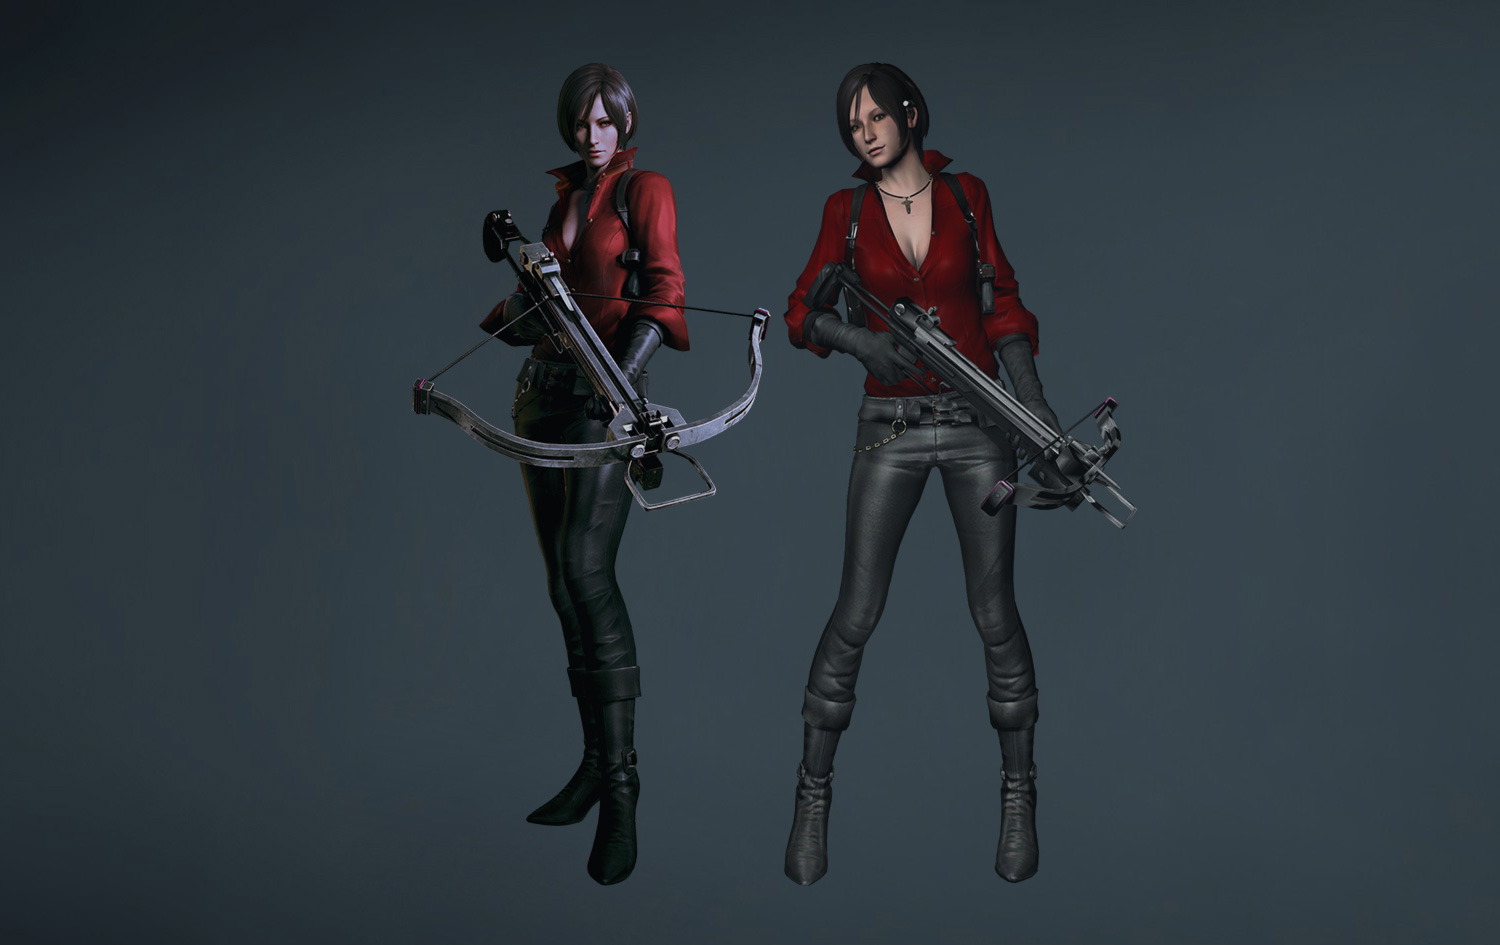 2012 год: первое переосмысление Ады Вонг в рамках Resident Evil 6